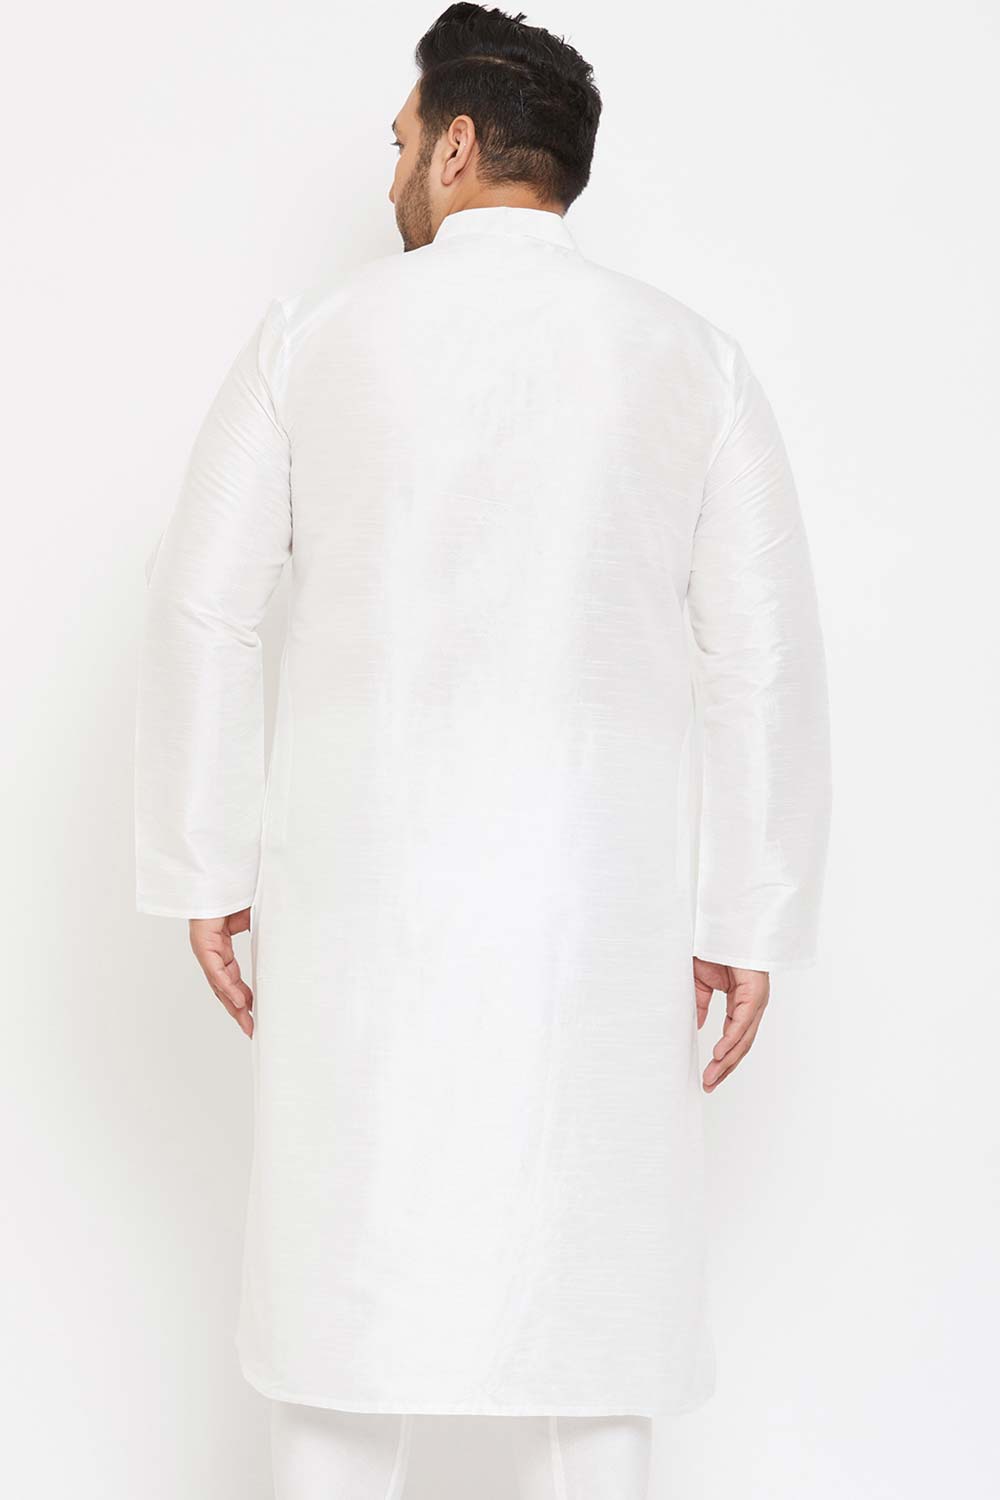 Buy Men's Silk Blend Solid Kurta in White - Back